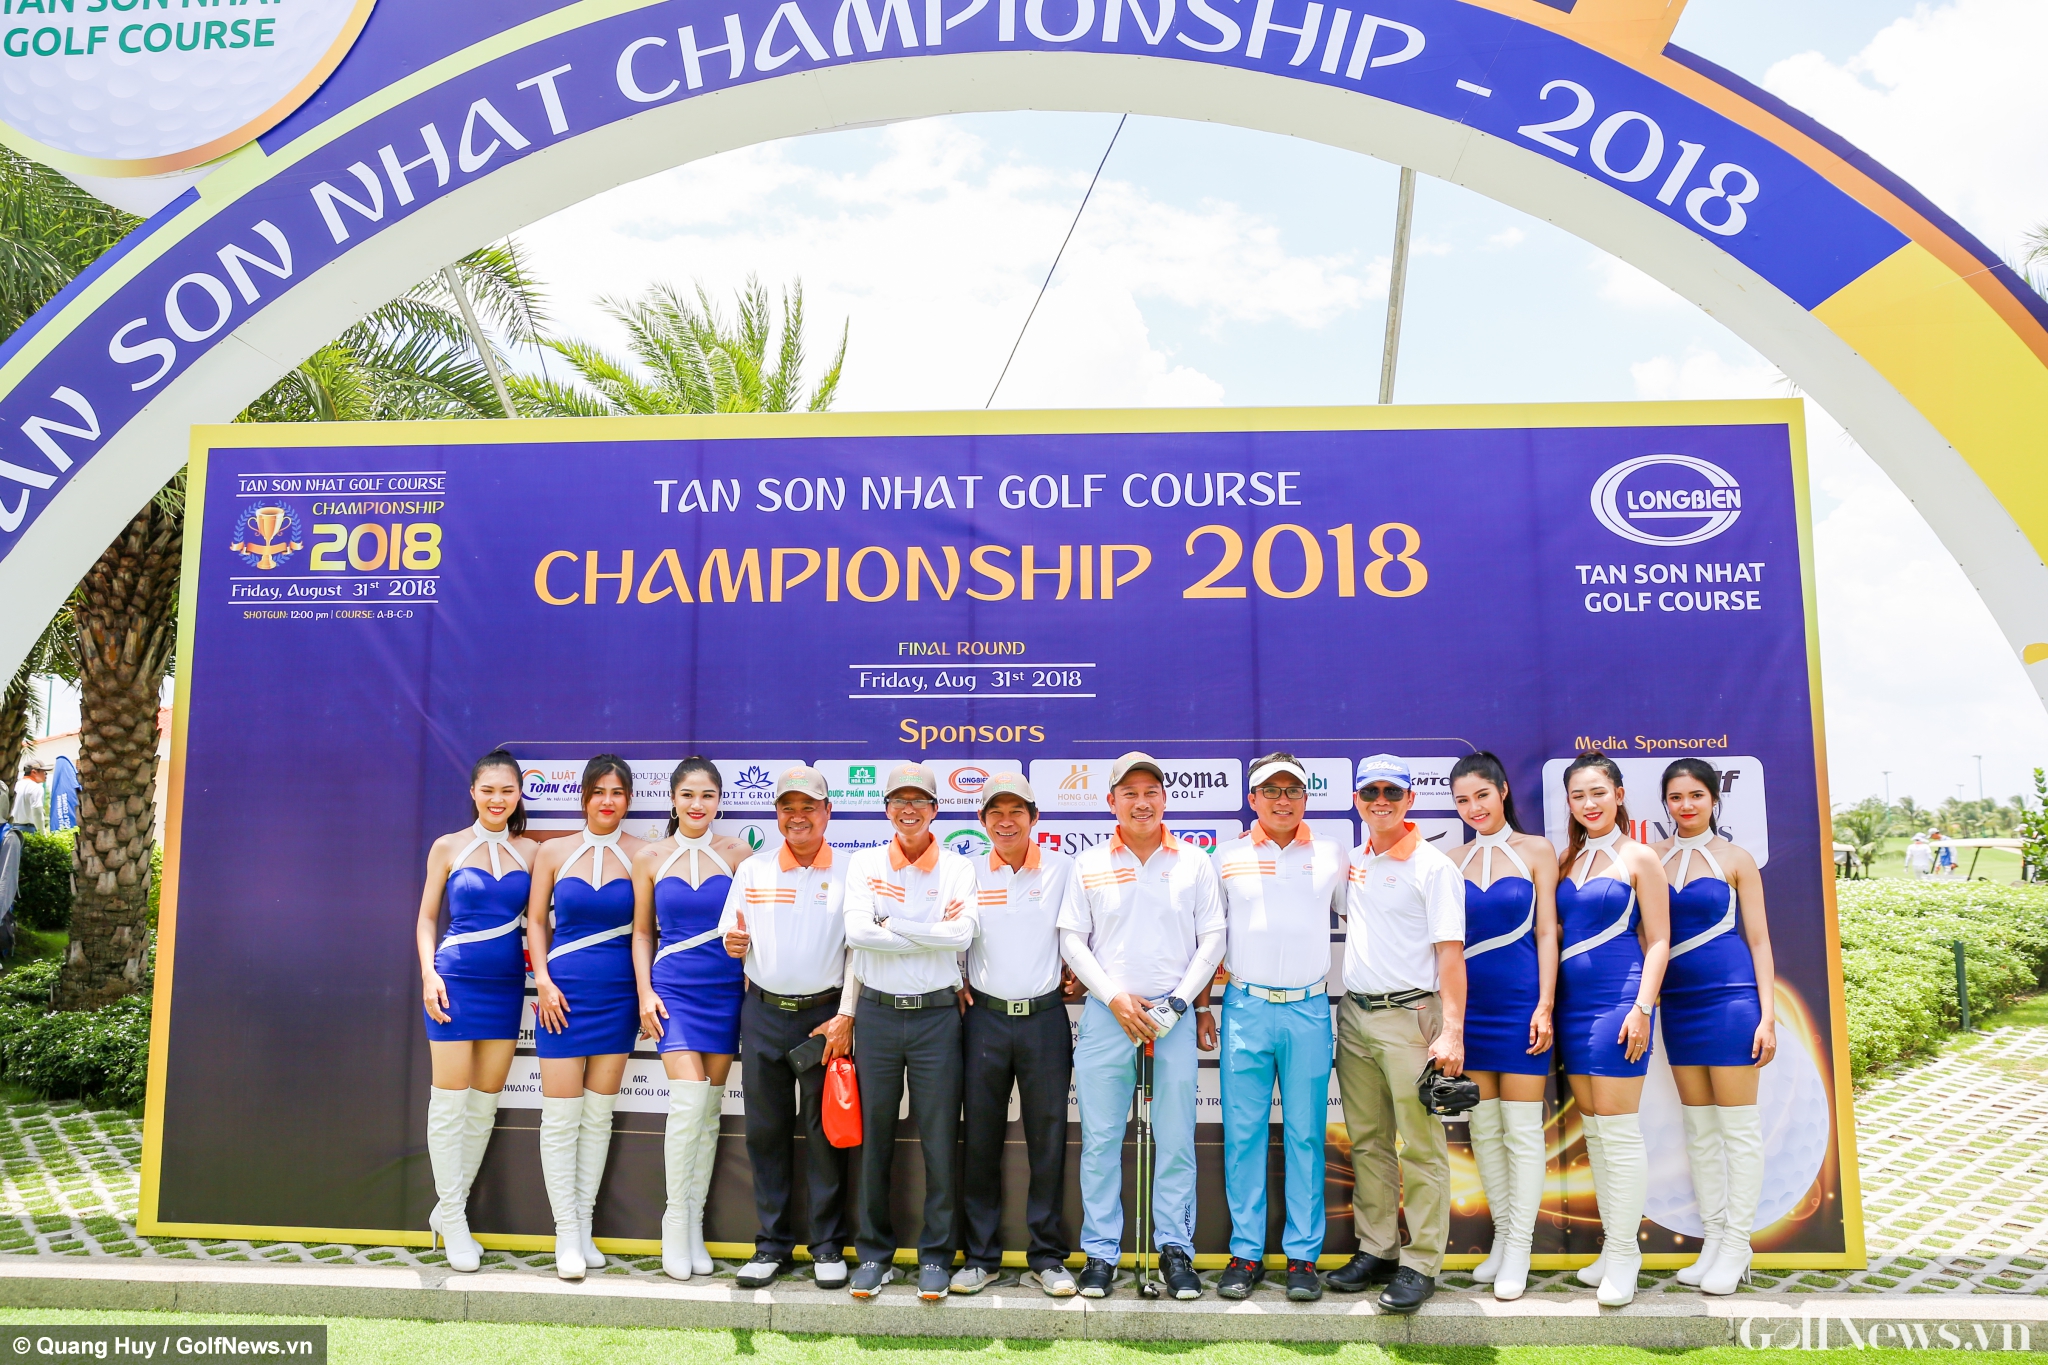 Chùm ảnh: Những khoảnh khắc đáng nhớ tại vòng chung kết Tan Son Nhat Golf Course Championship 2018